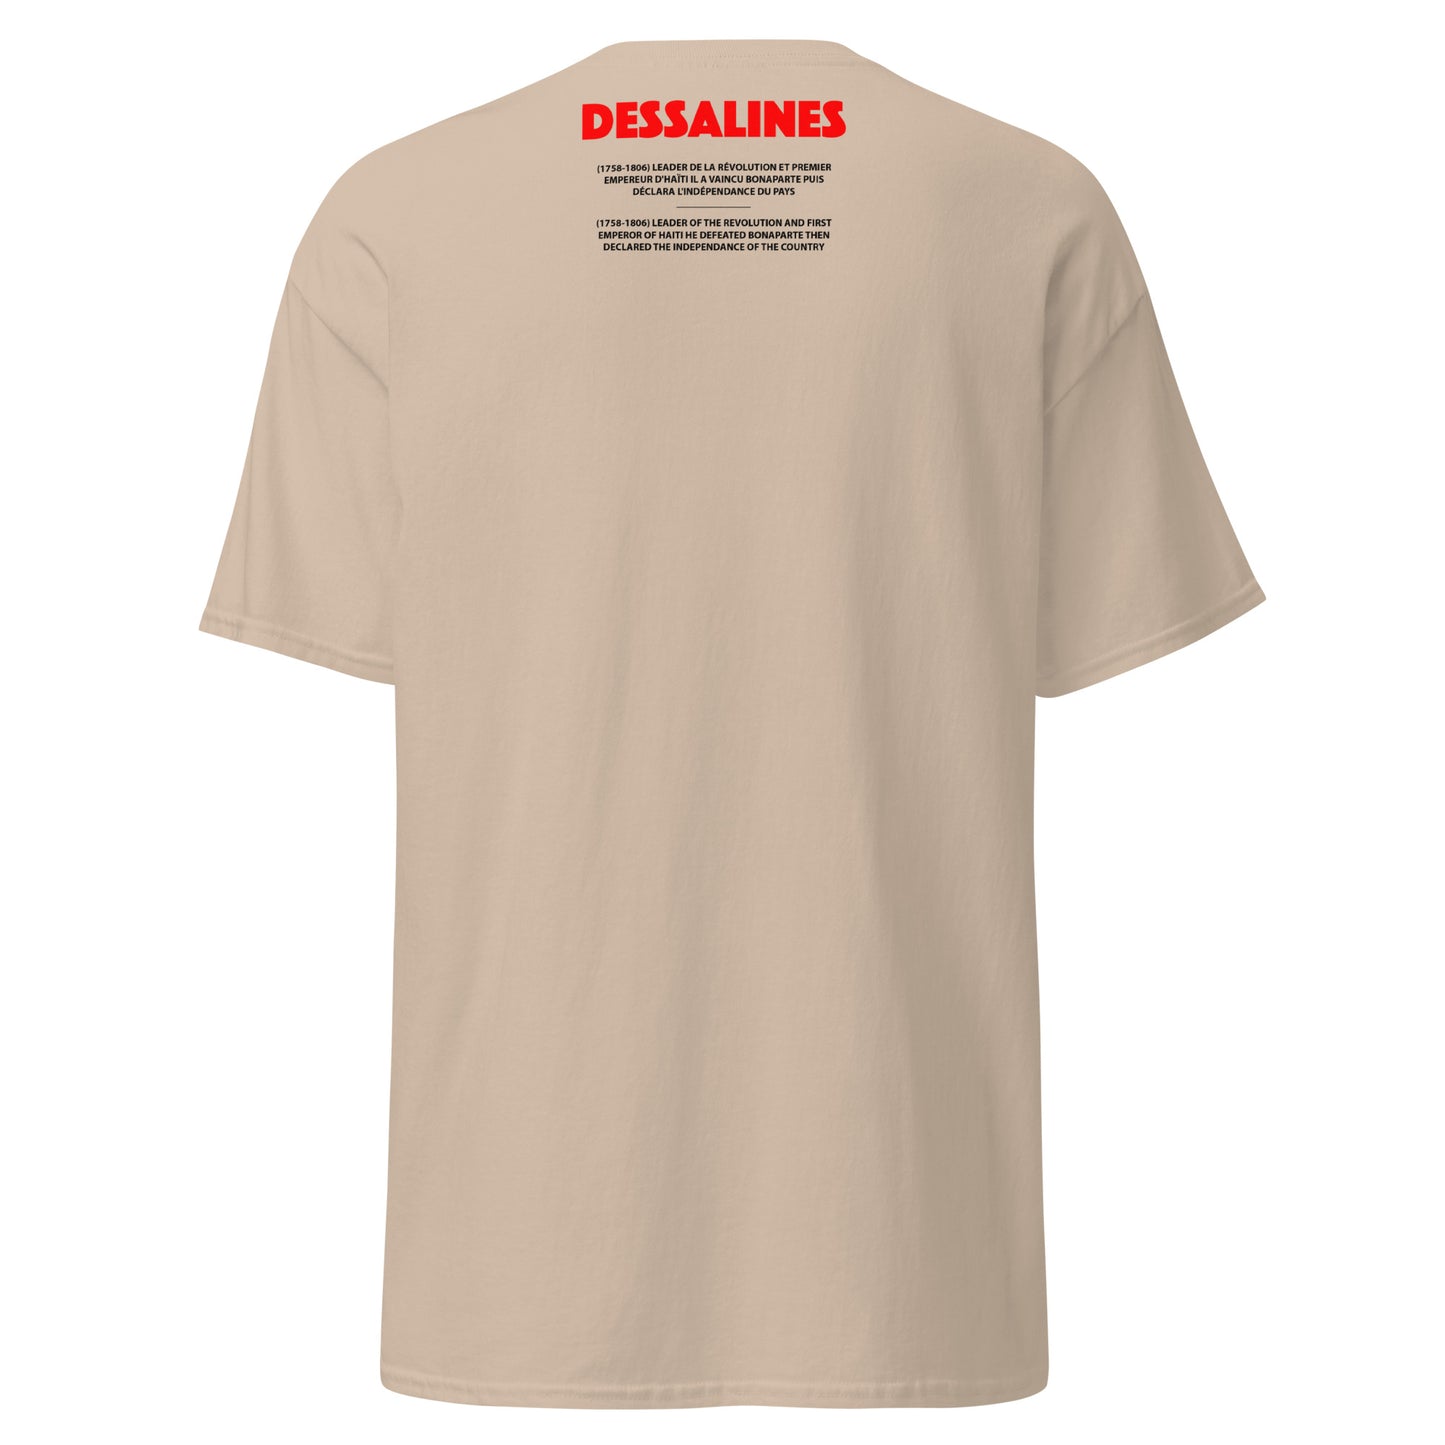 DESSALINES (T-Shirt Cadre)